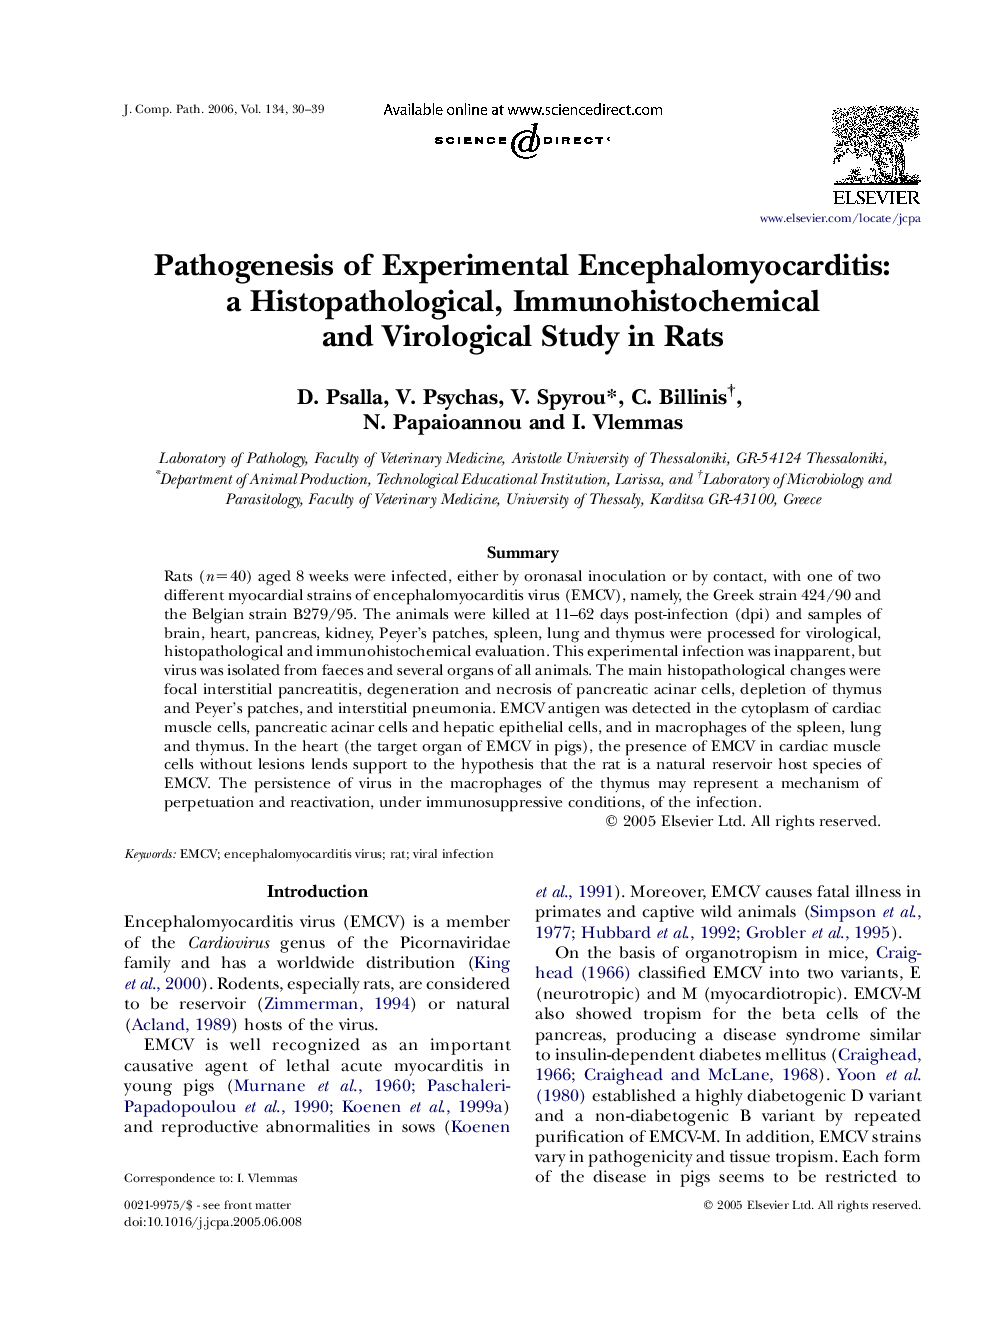 Pathogenesis of Experimental Encephalomyocarditis: a Histopathological, Immunohistochemical and Virological Study in Rats